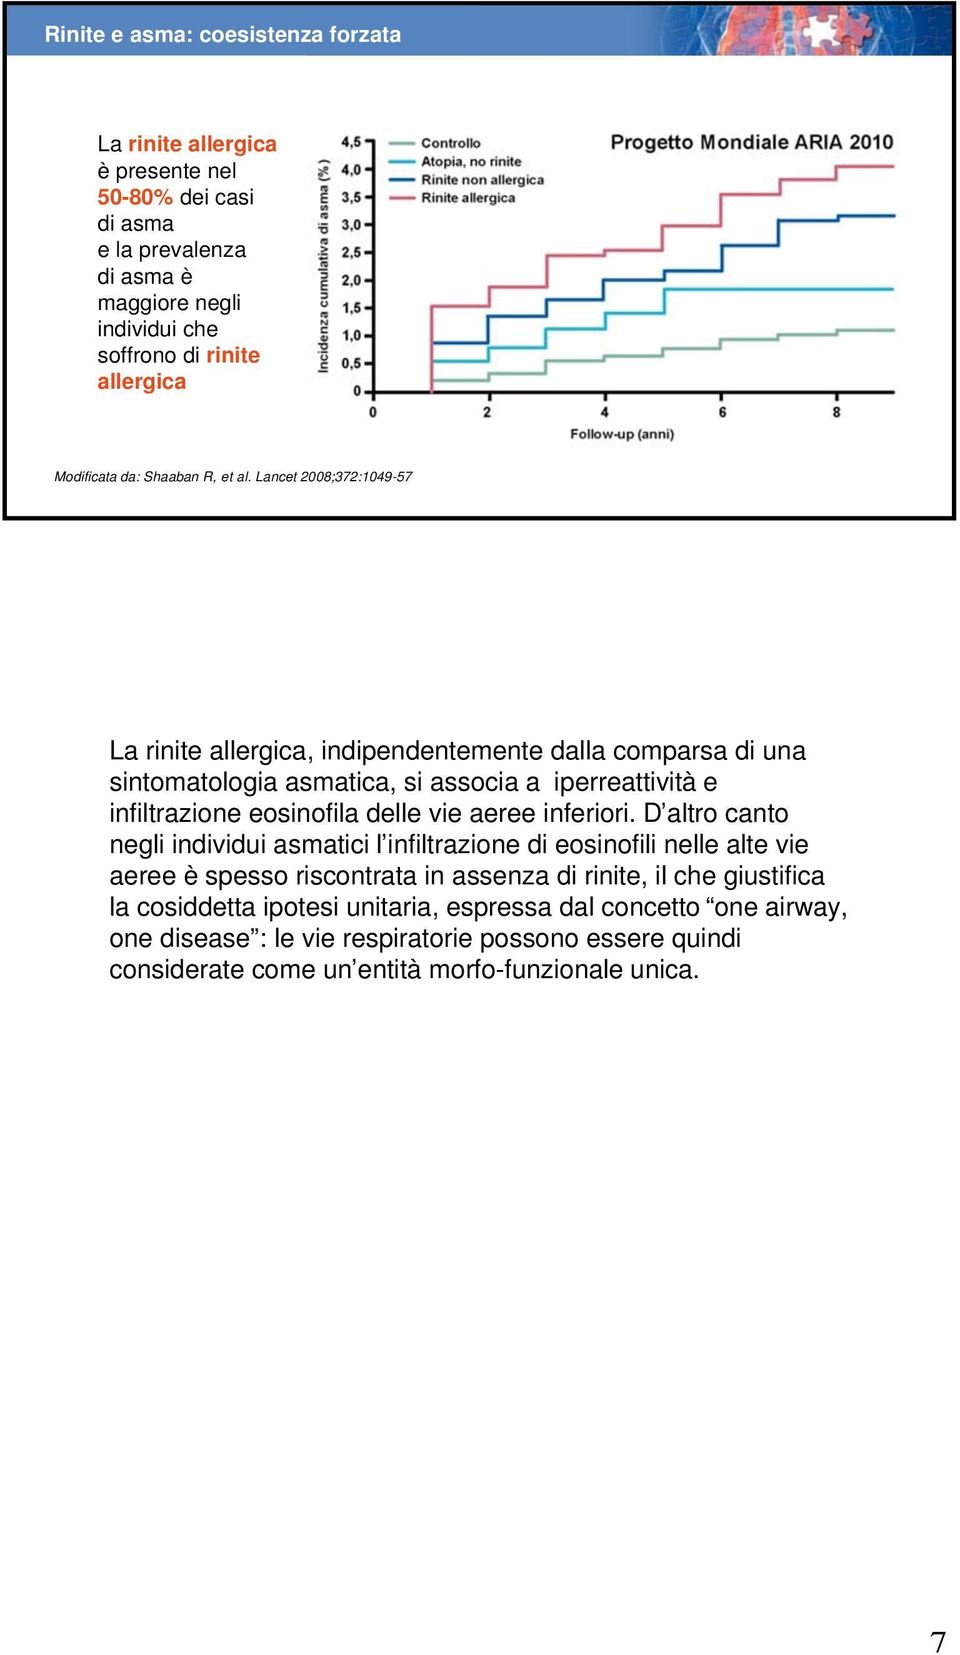 Lancet 2008;372:1049-57 La rinite allergica, indipendentemente dalla comparsa di una sintomatologia asmatica, si associa a iperreattività e infiltrazione eosinofila delle vie aeree